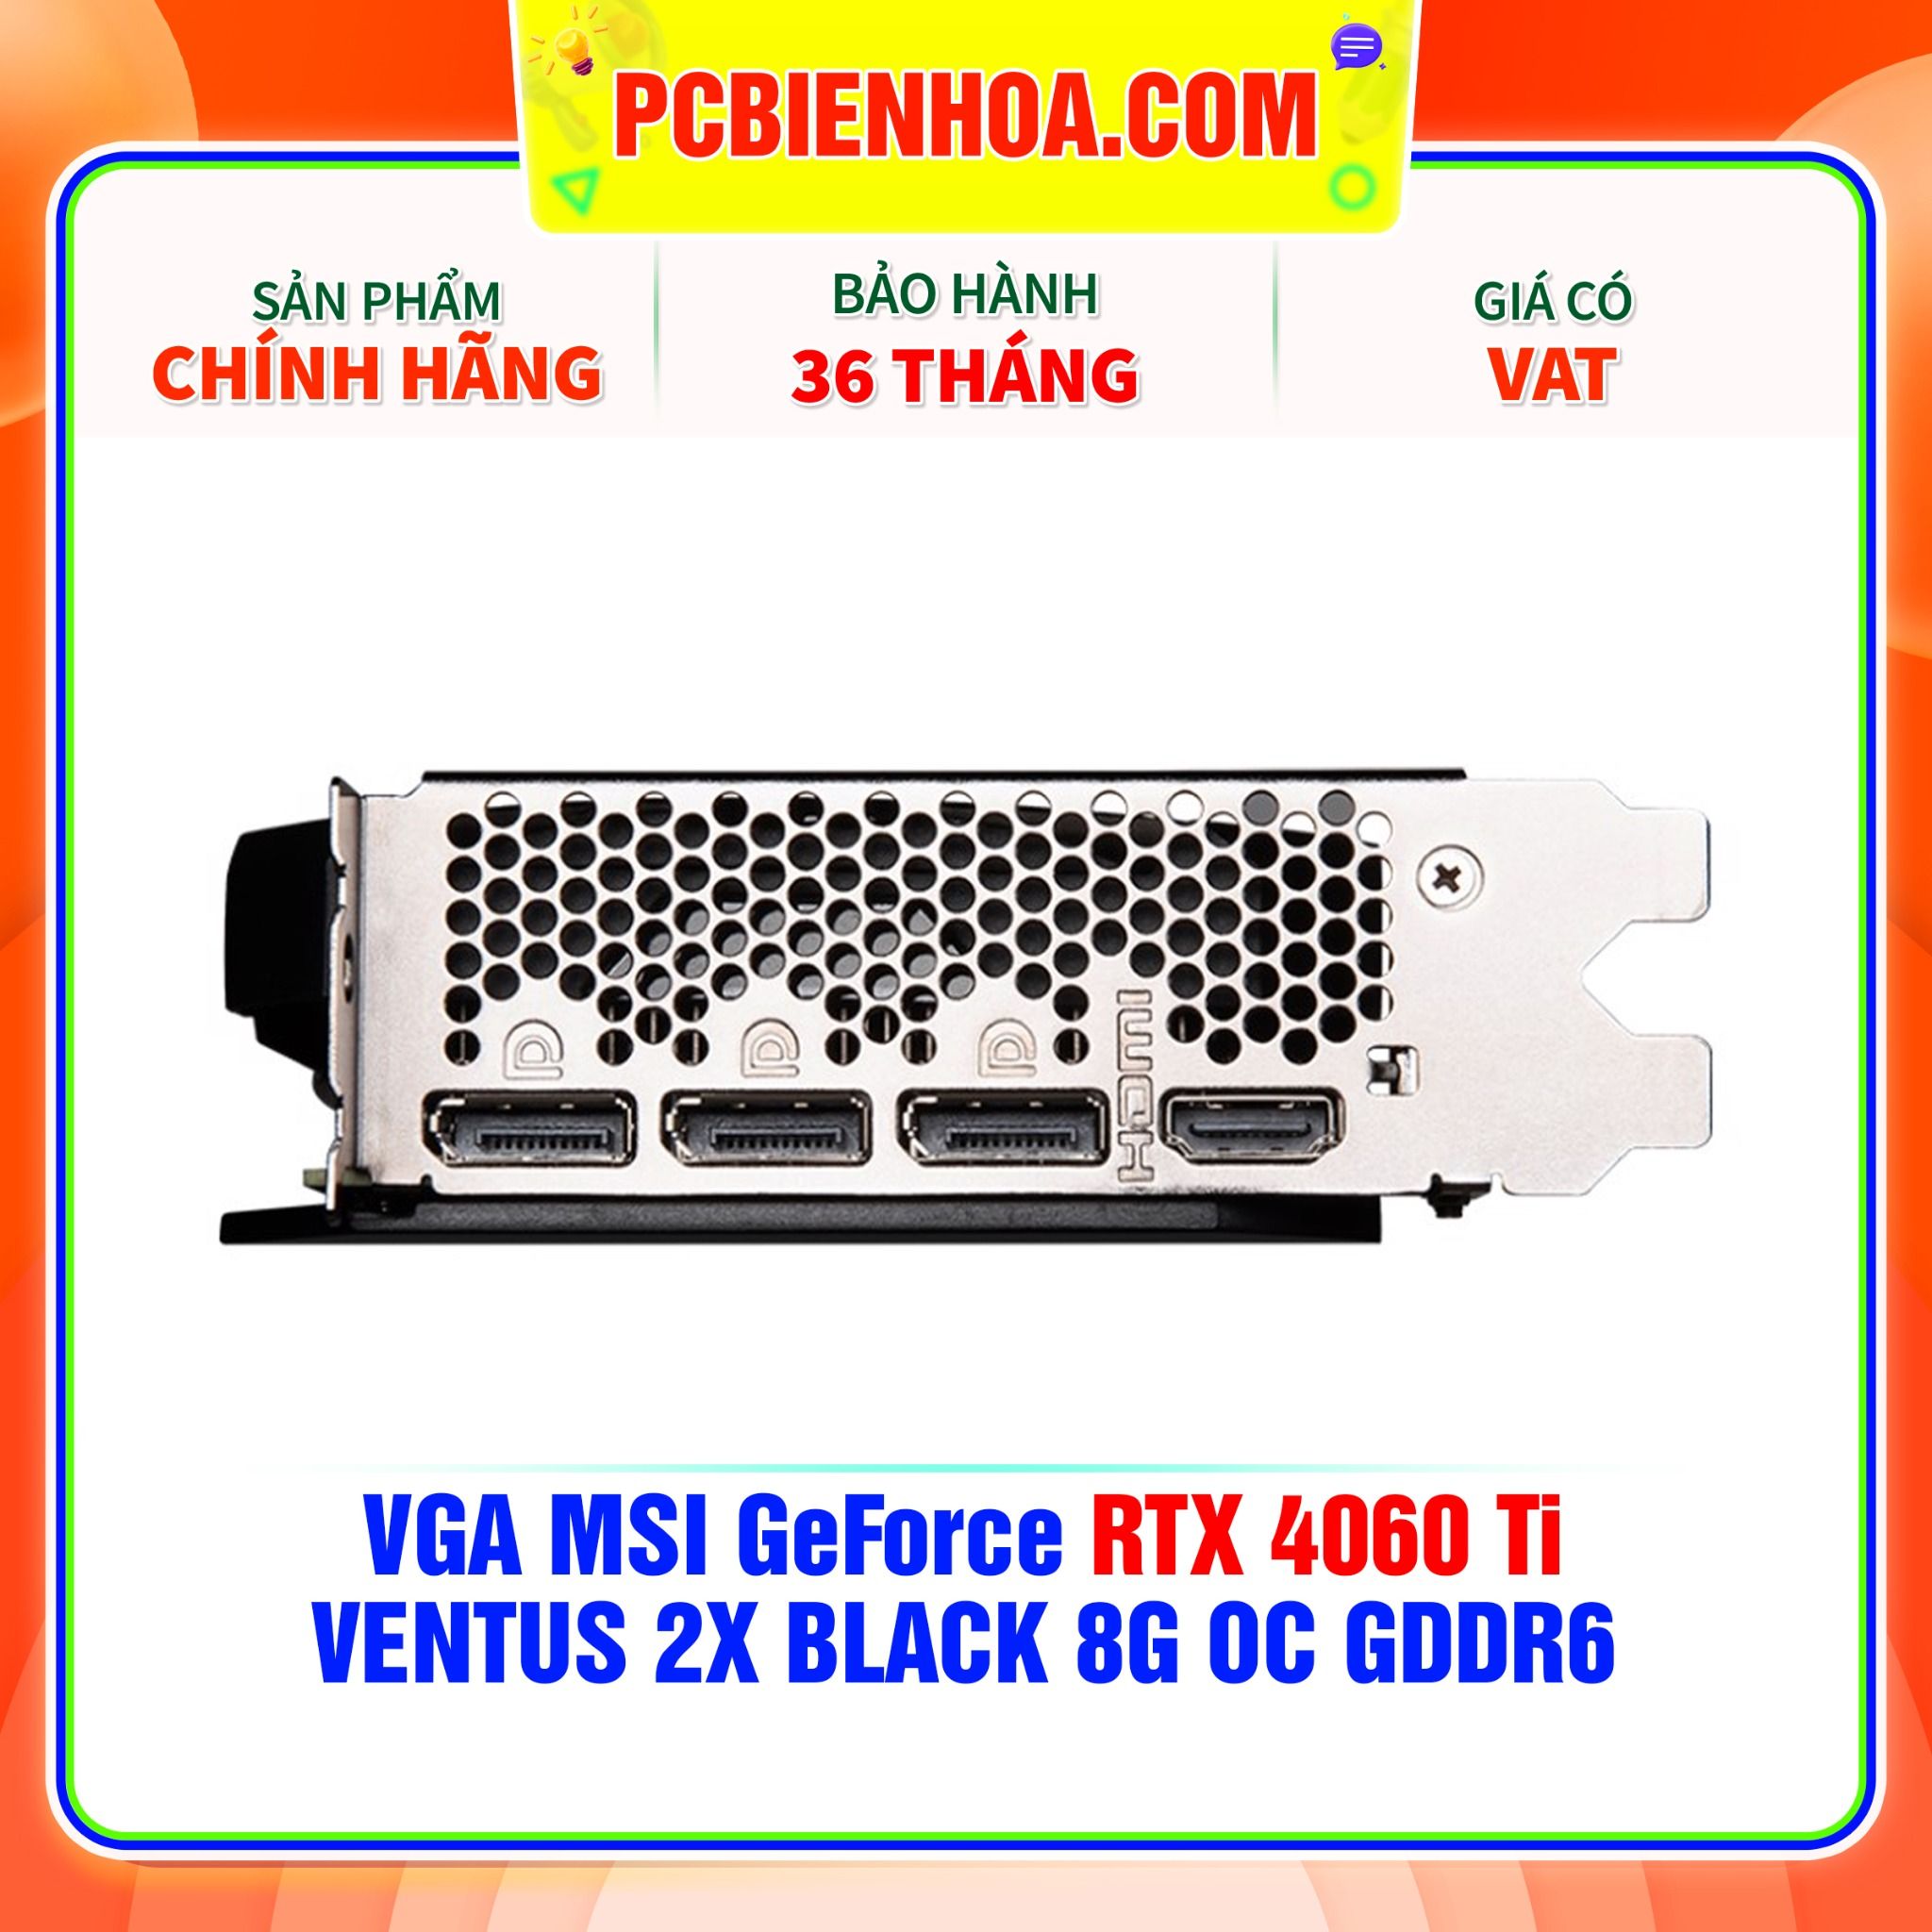  VGA MSI GeForce RTX 4060 Ti VENTUS 2X BLACK 8G OC GDDR6 